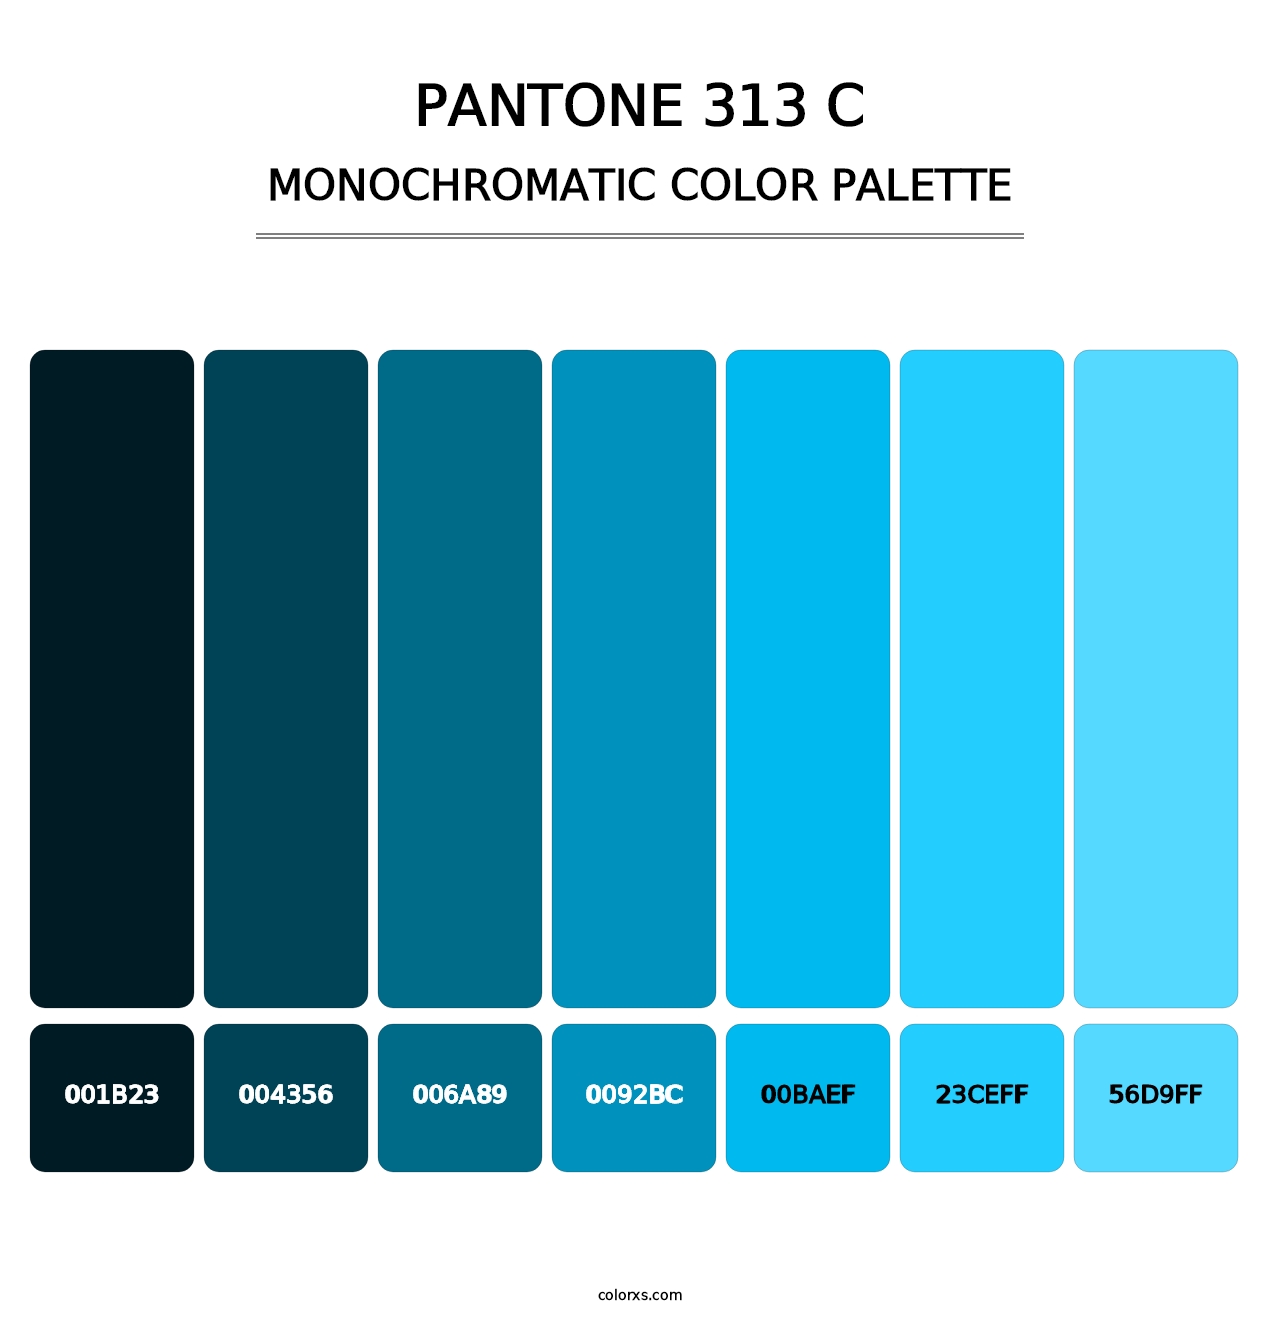 PANTONE 313 C - Monochromatic Color Palette